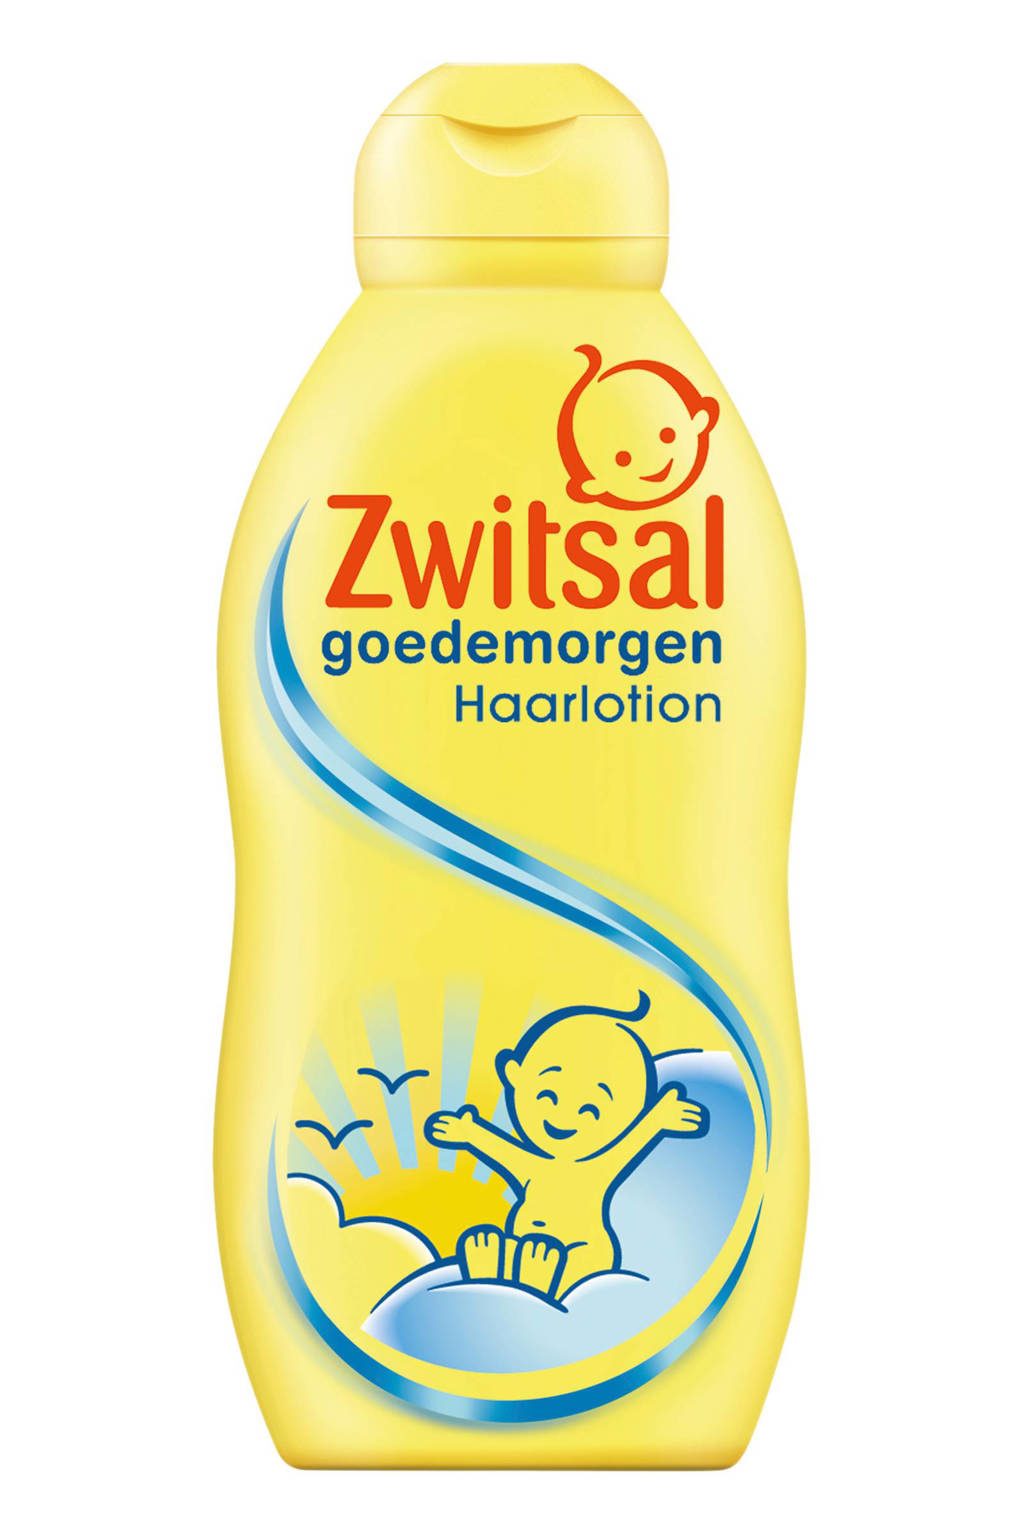 Odysseus Korst Zenuw Zwitsal - Baby Haarlotion - Goedemorgen - 6 x 200ml - Voordeelverpakki -  Babydrogist.nl